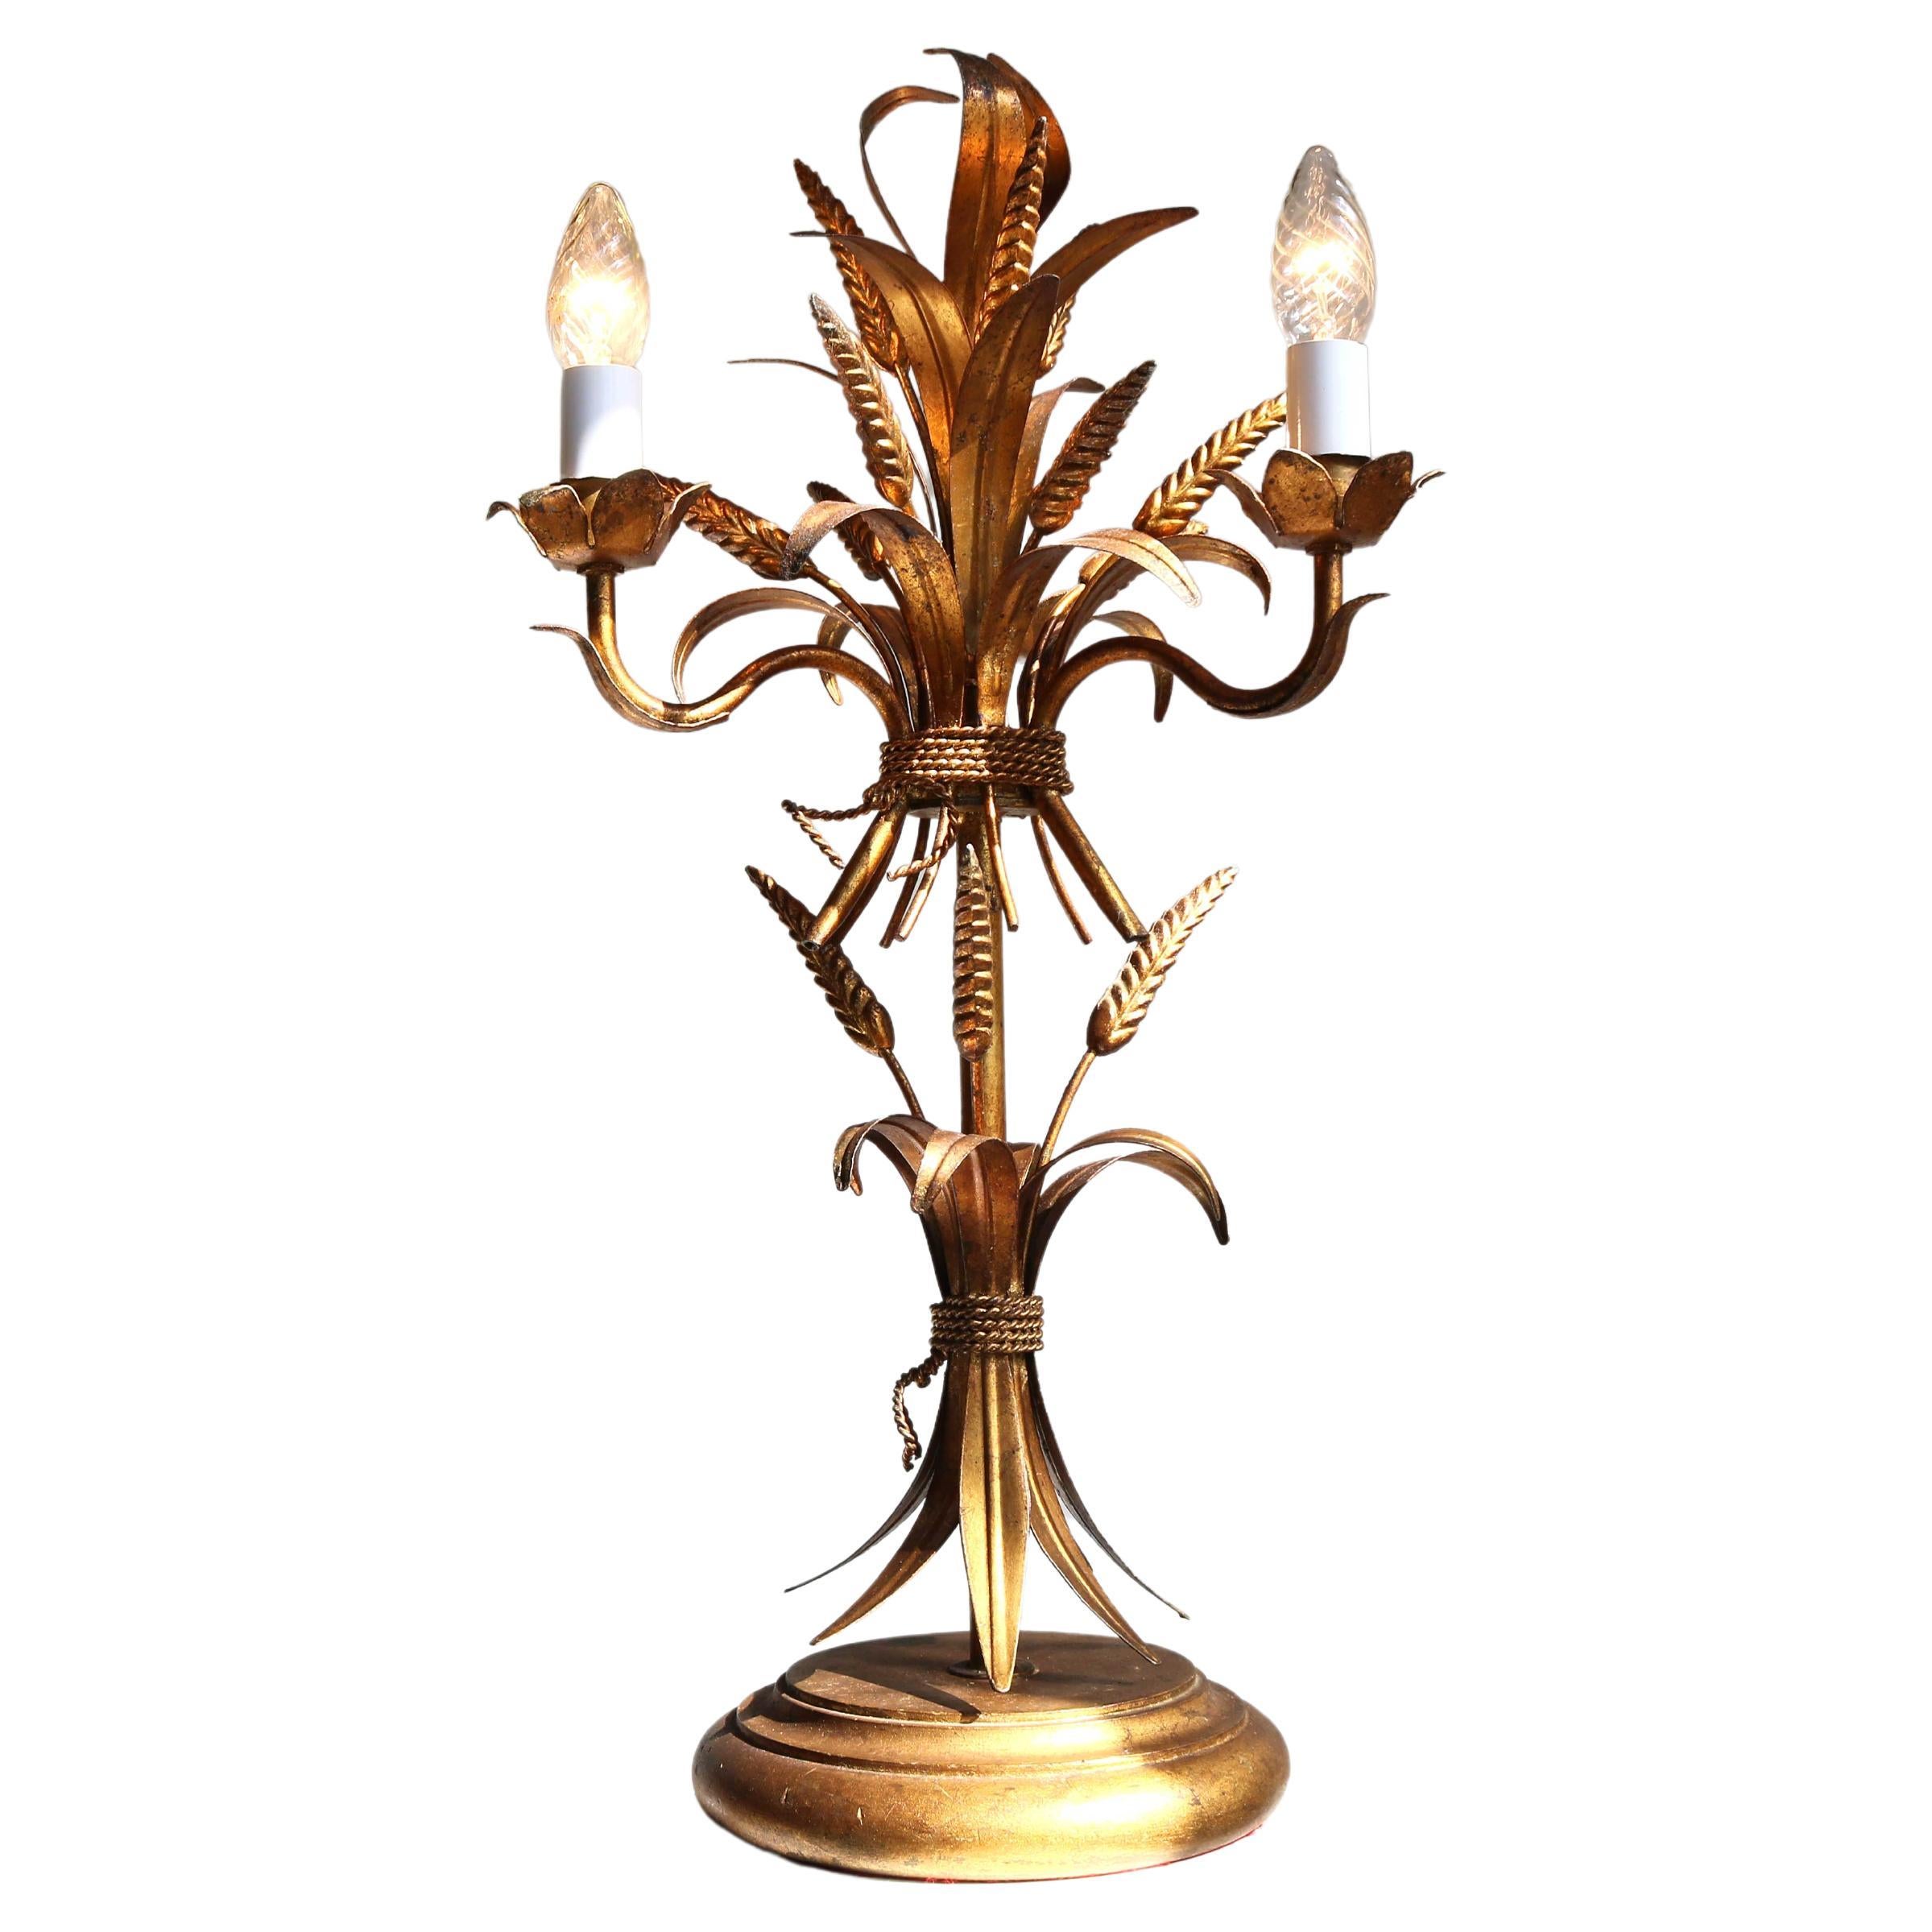 Vergoldete Weizengarbe-Tischleuchte, Florentine Tischlampe von Hans Kgl, 1960er Jahre